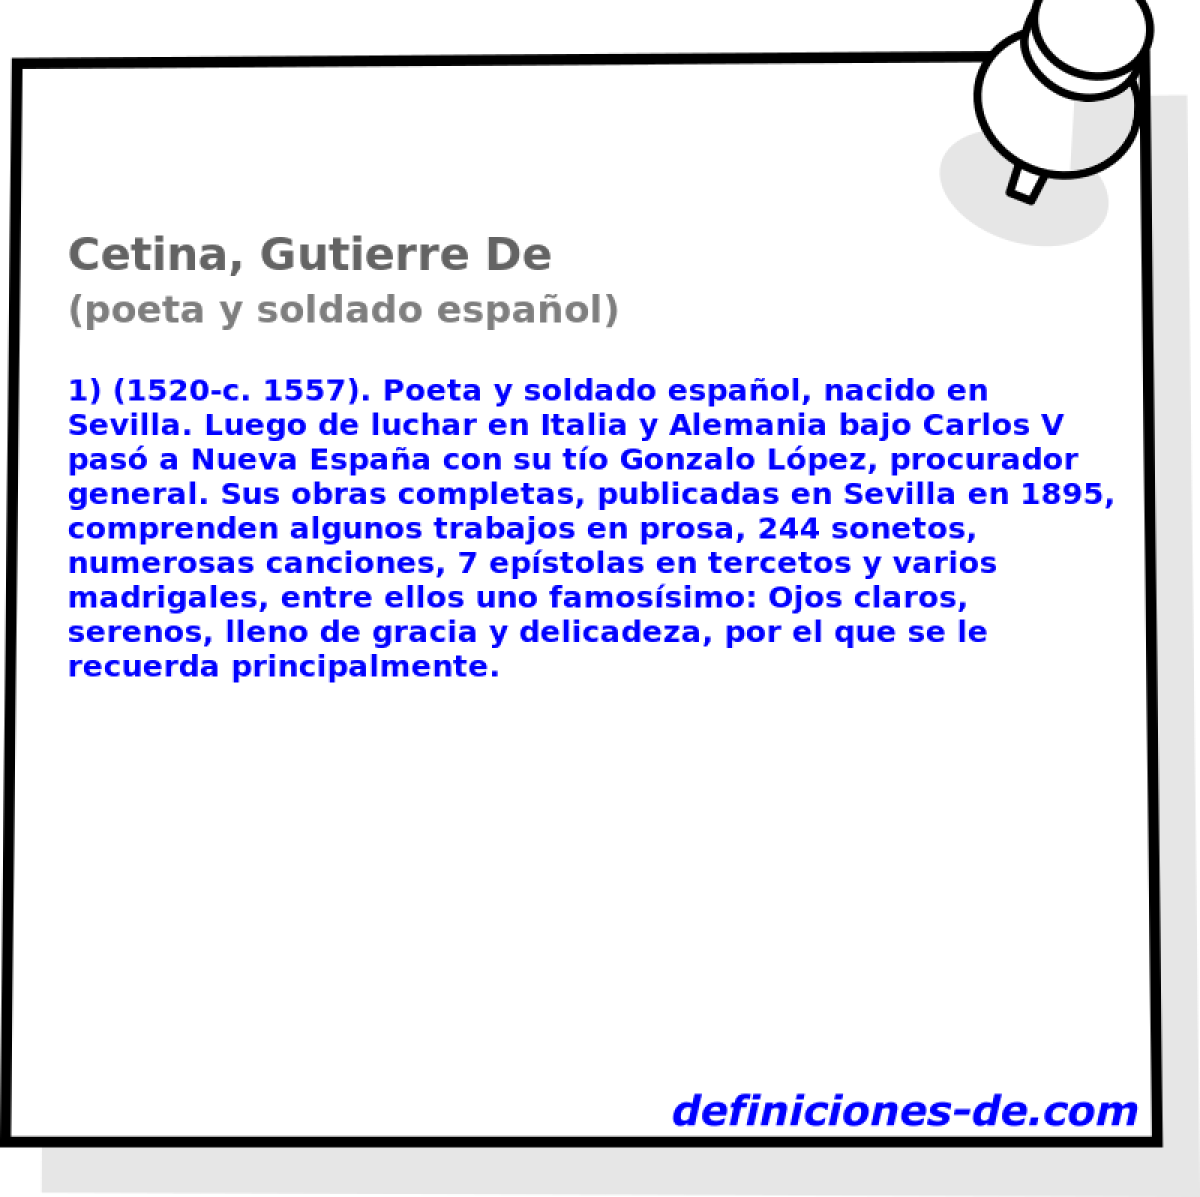 Cetina, Gutierre De (poeta y soldado espaol)